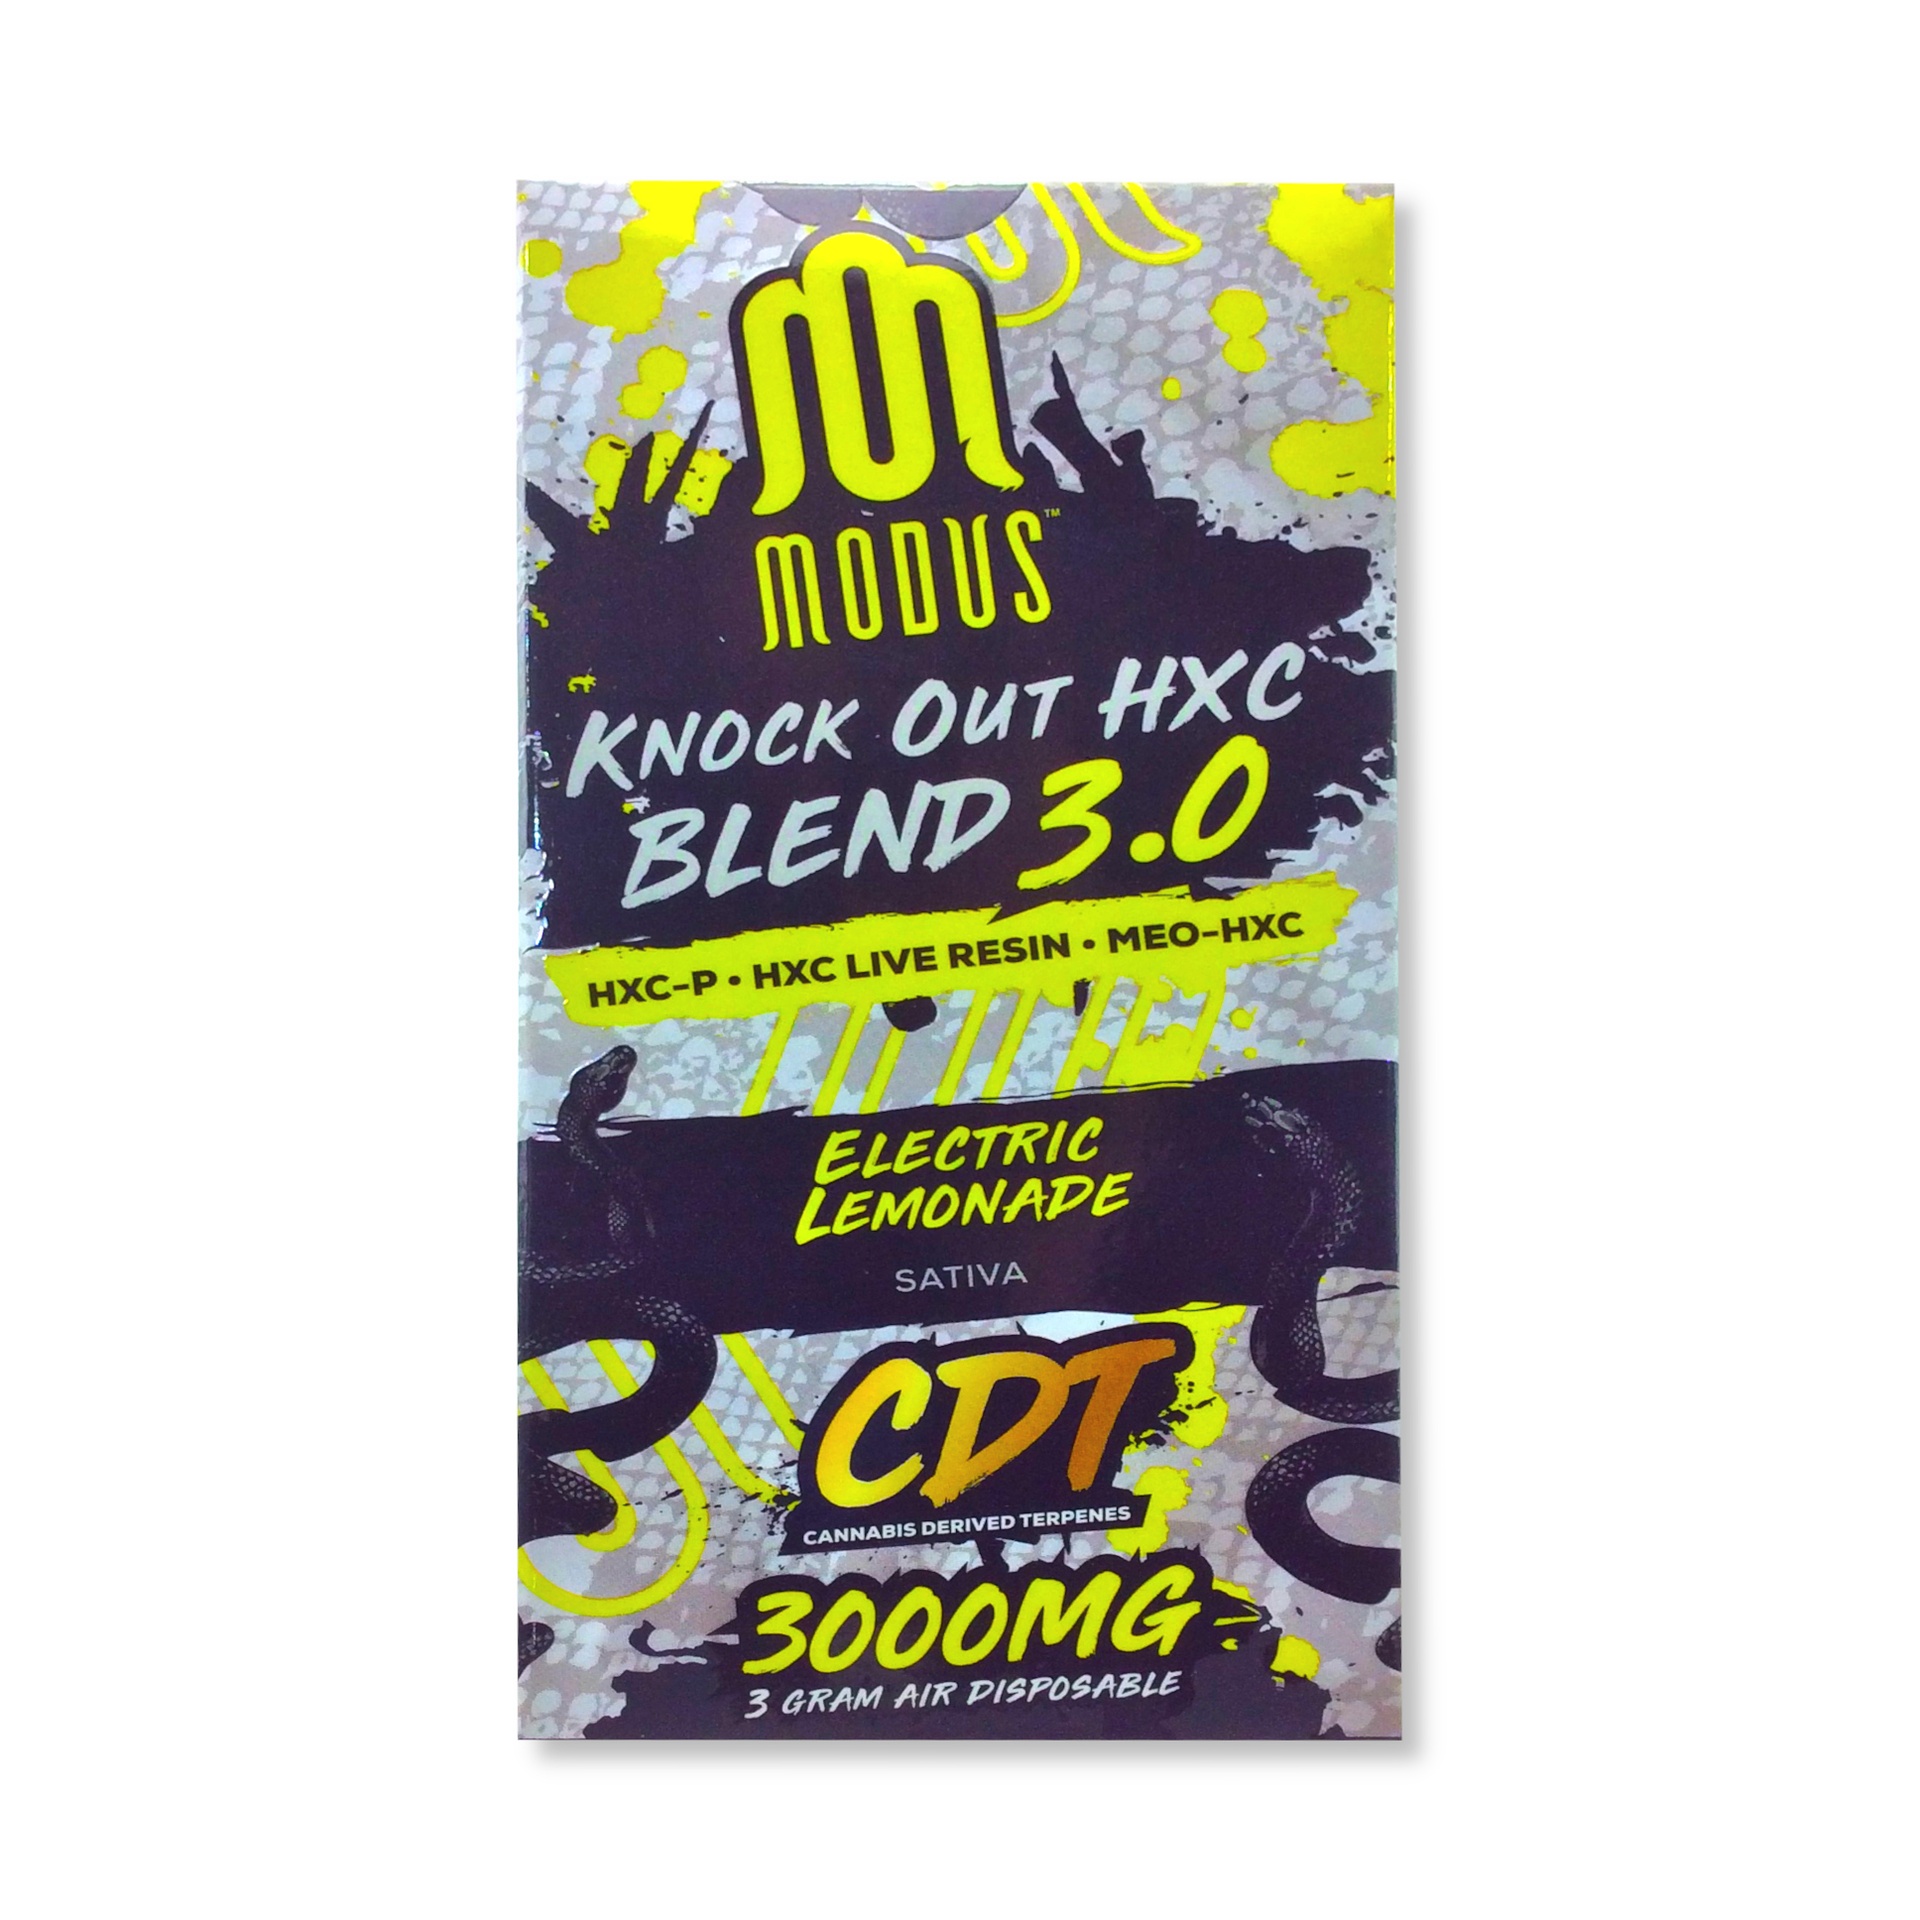 Modus HXC Blend 3.0 3G Disposable (Electric Lemonade Sativa)